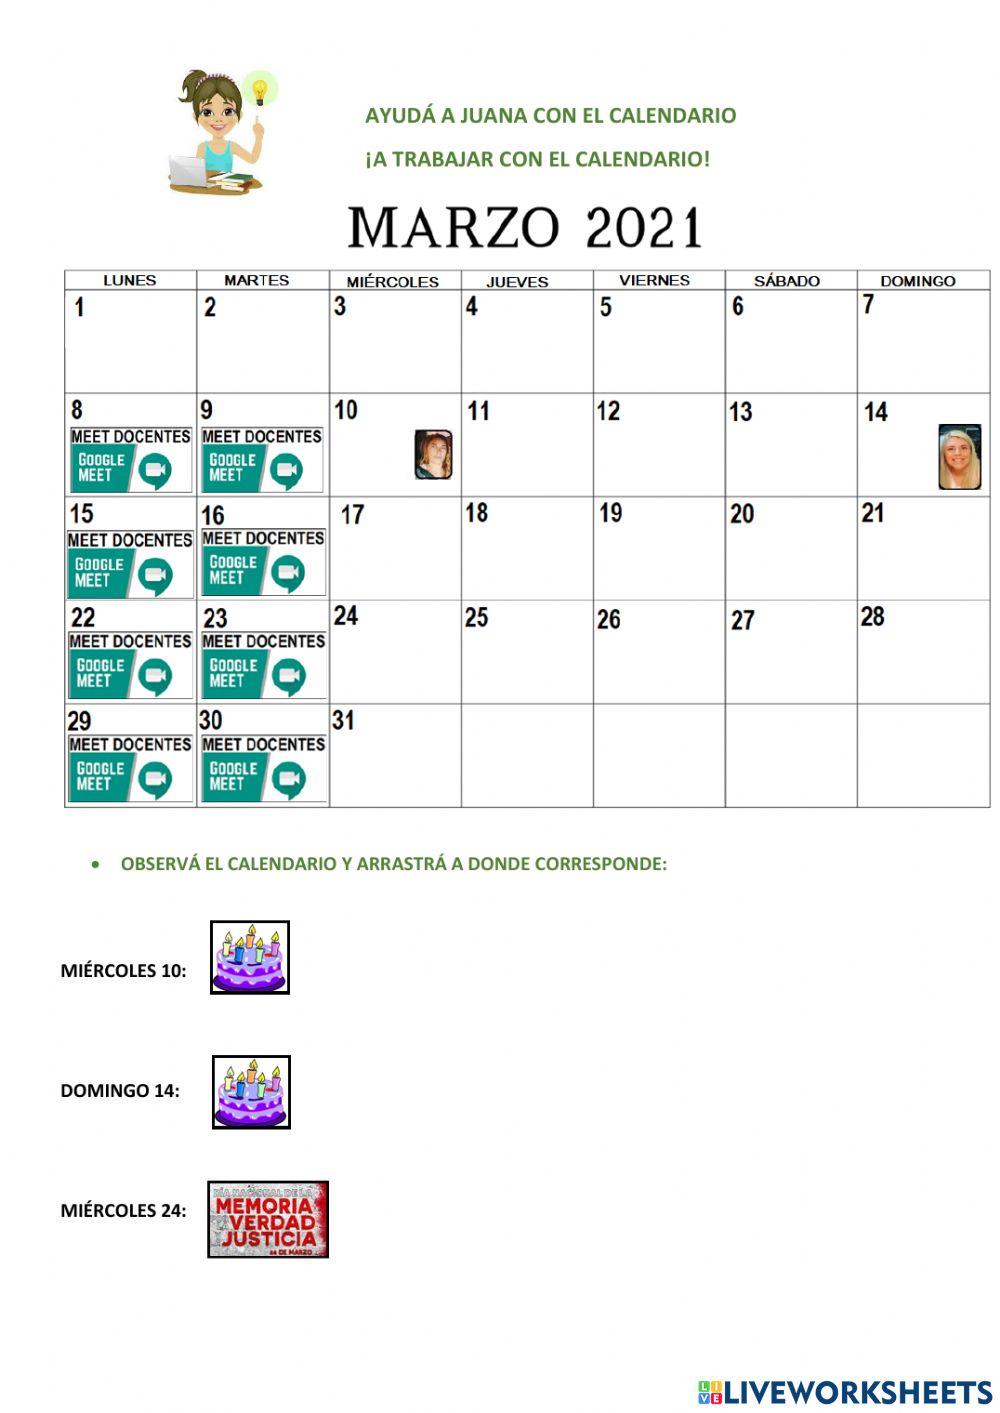 A trabajar con el calendario de marzo